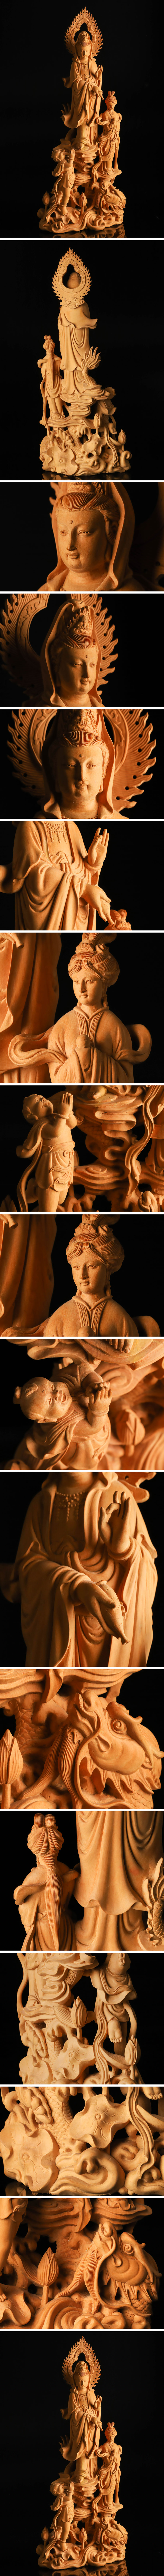 【得価低価】仏教美術 黄楊木彫 龍上観音像 高47cm TF353 仏像